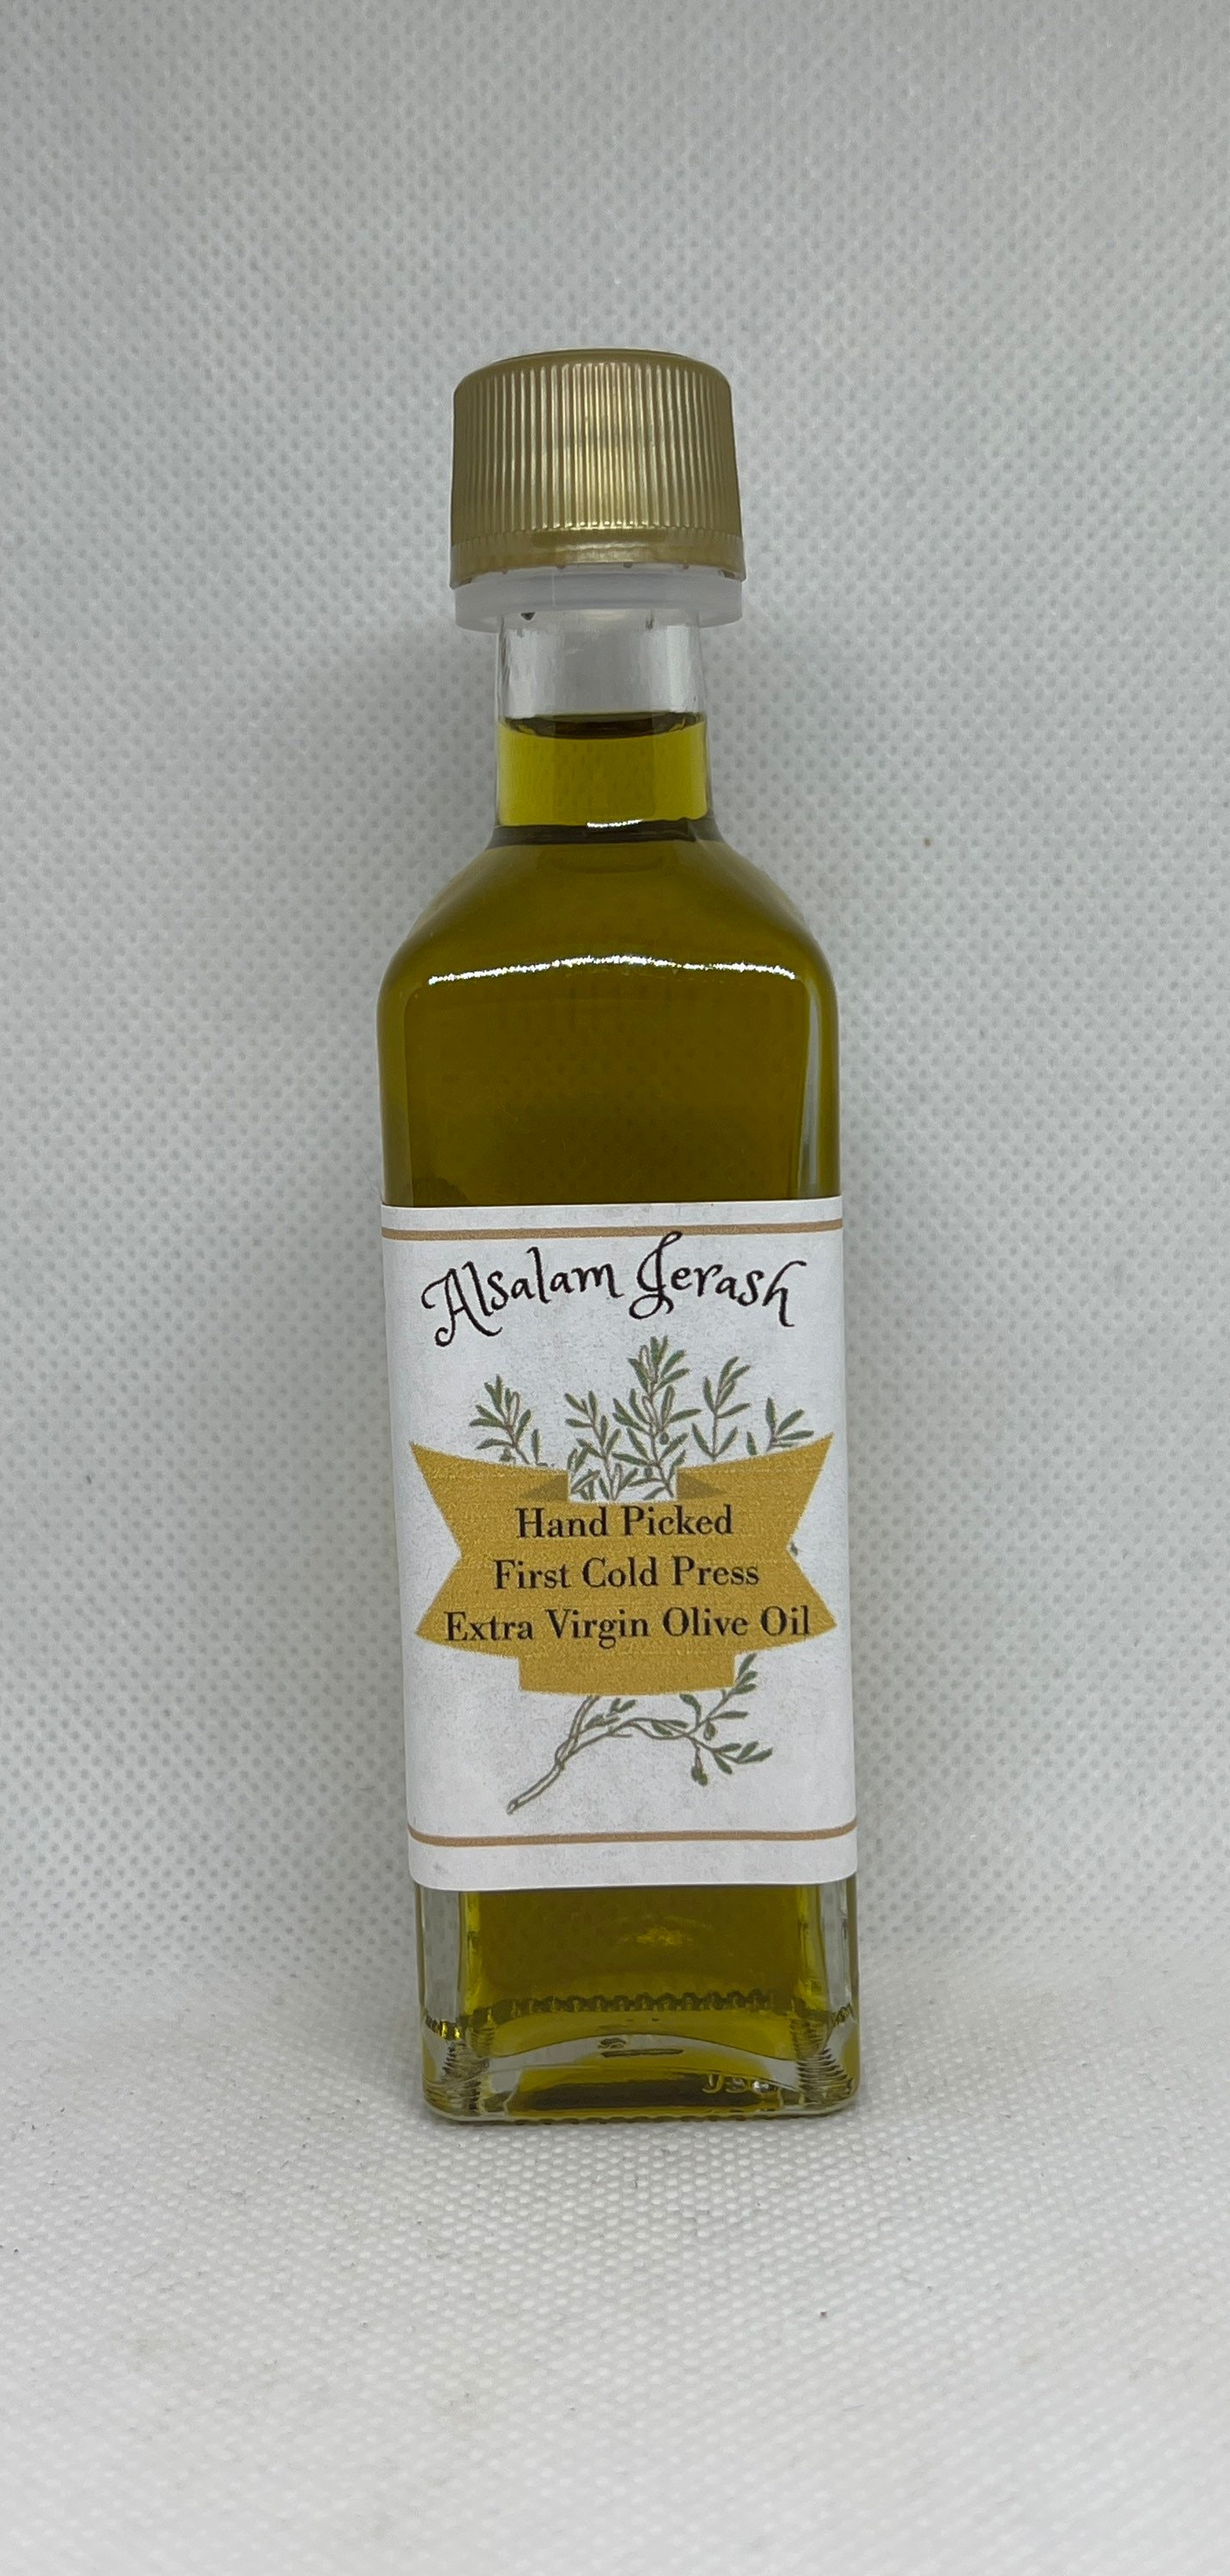 Beit Hanina Olive Oil 1 gallon